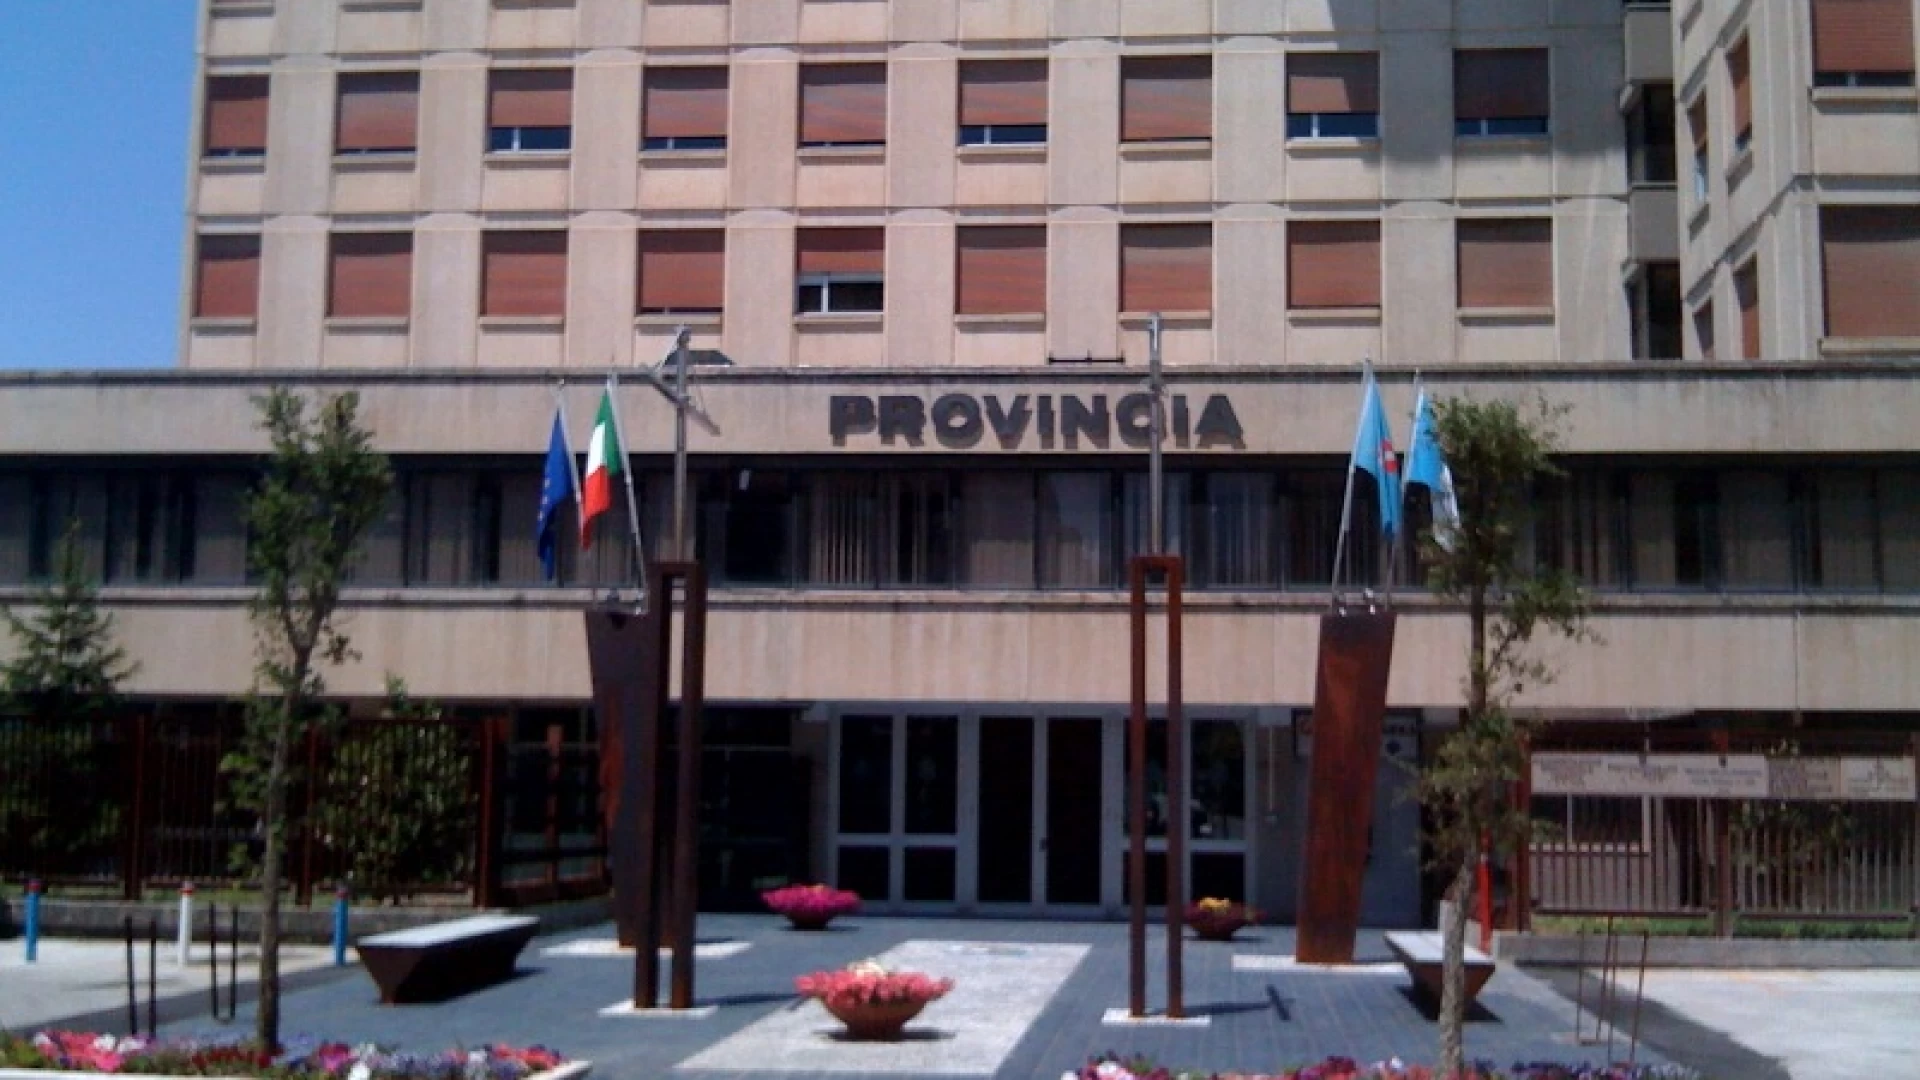 La Provincia di Isernia favorevole all’attivazione di un nuovo indirizzo presso l’istituto Omicomprensivo “A. Giordano” di Venafro.